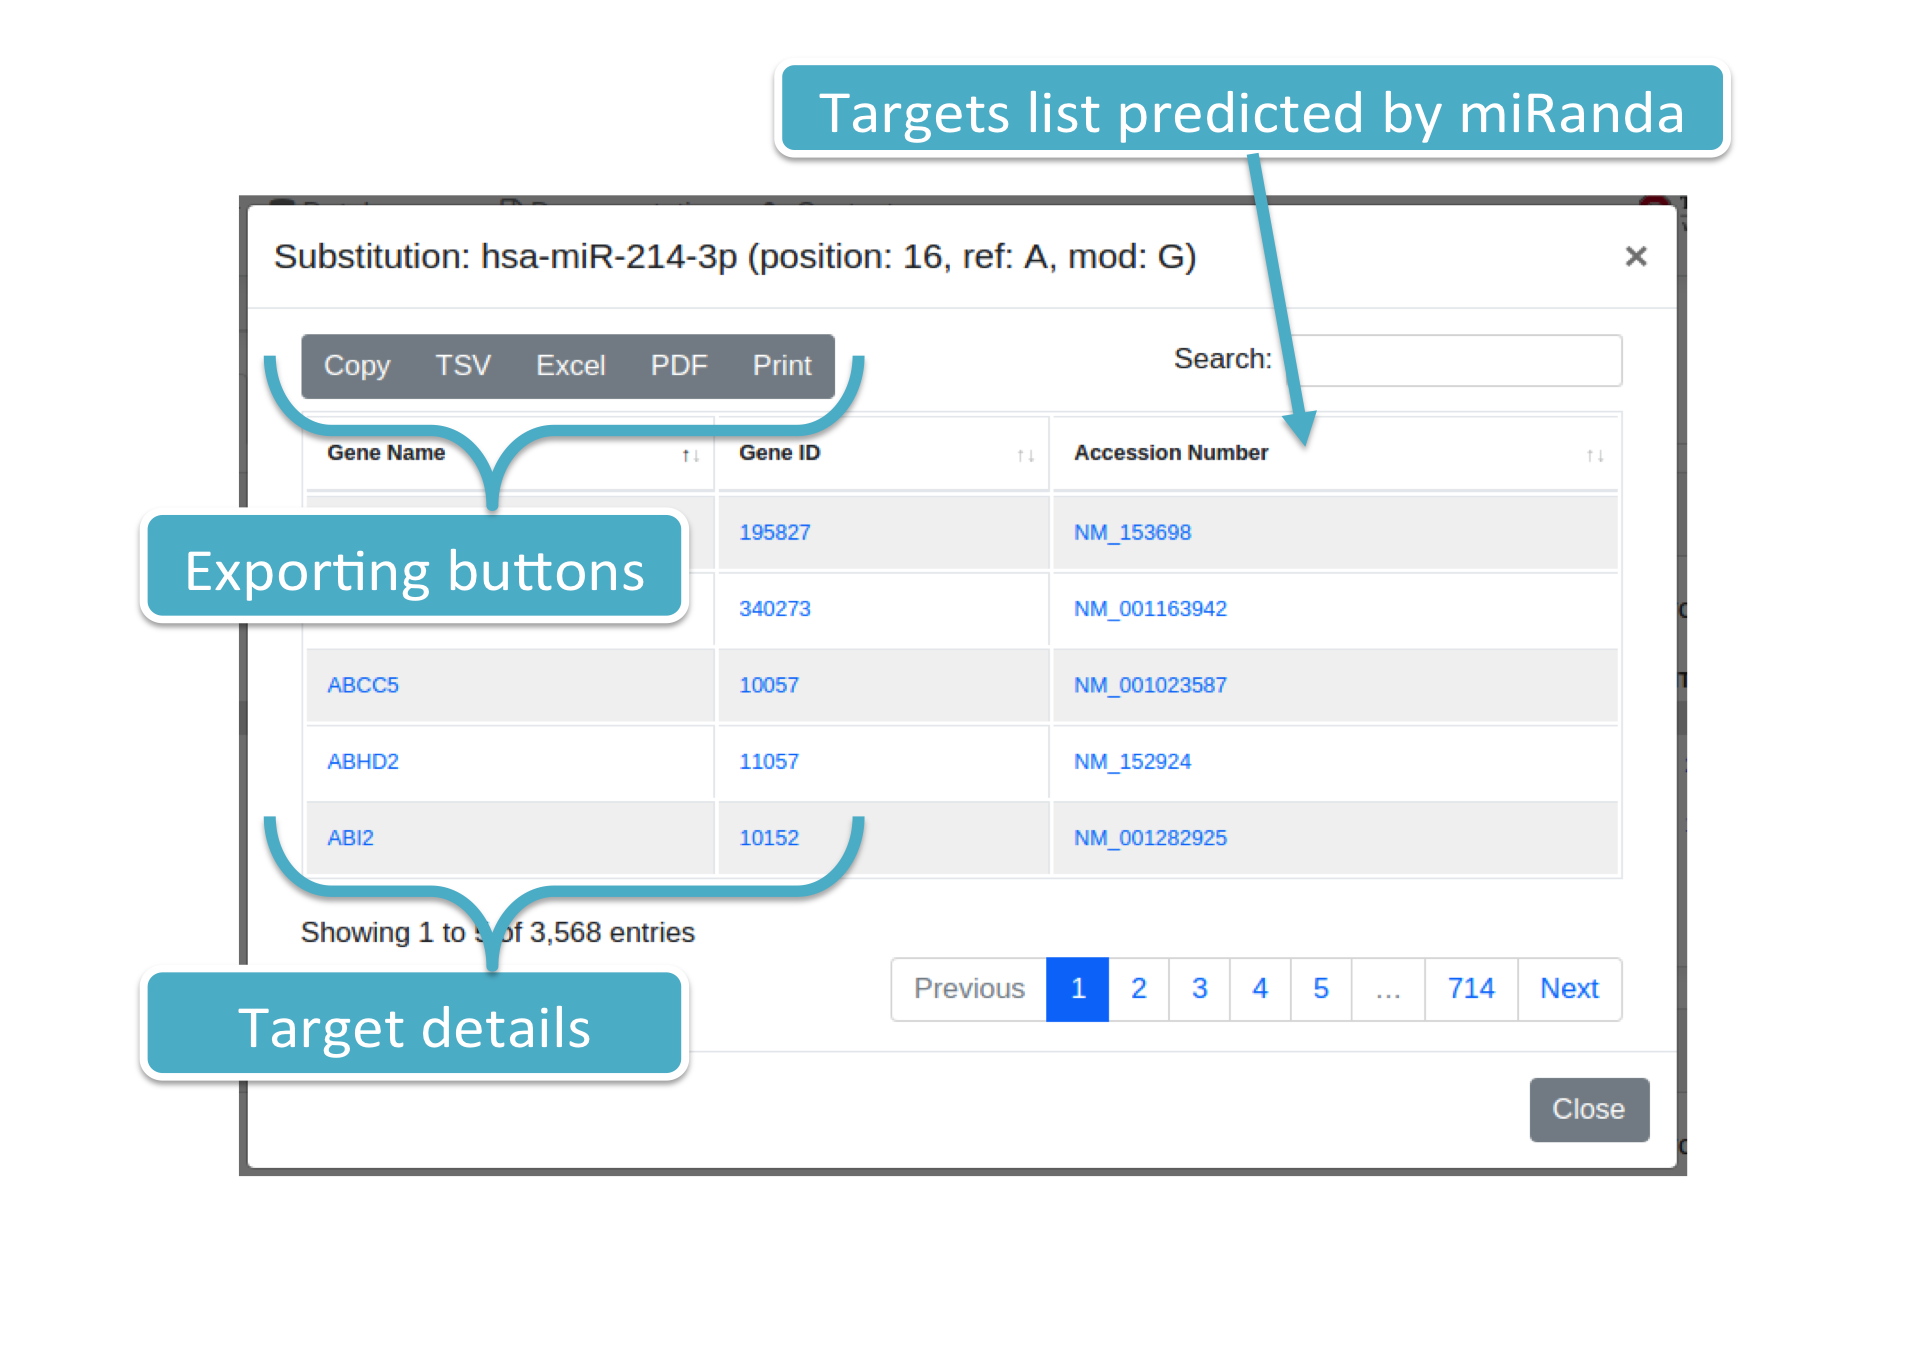 miRanda predicted targets